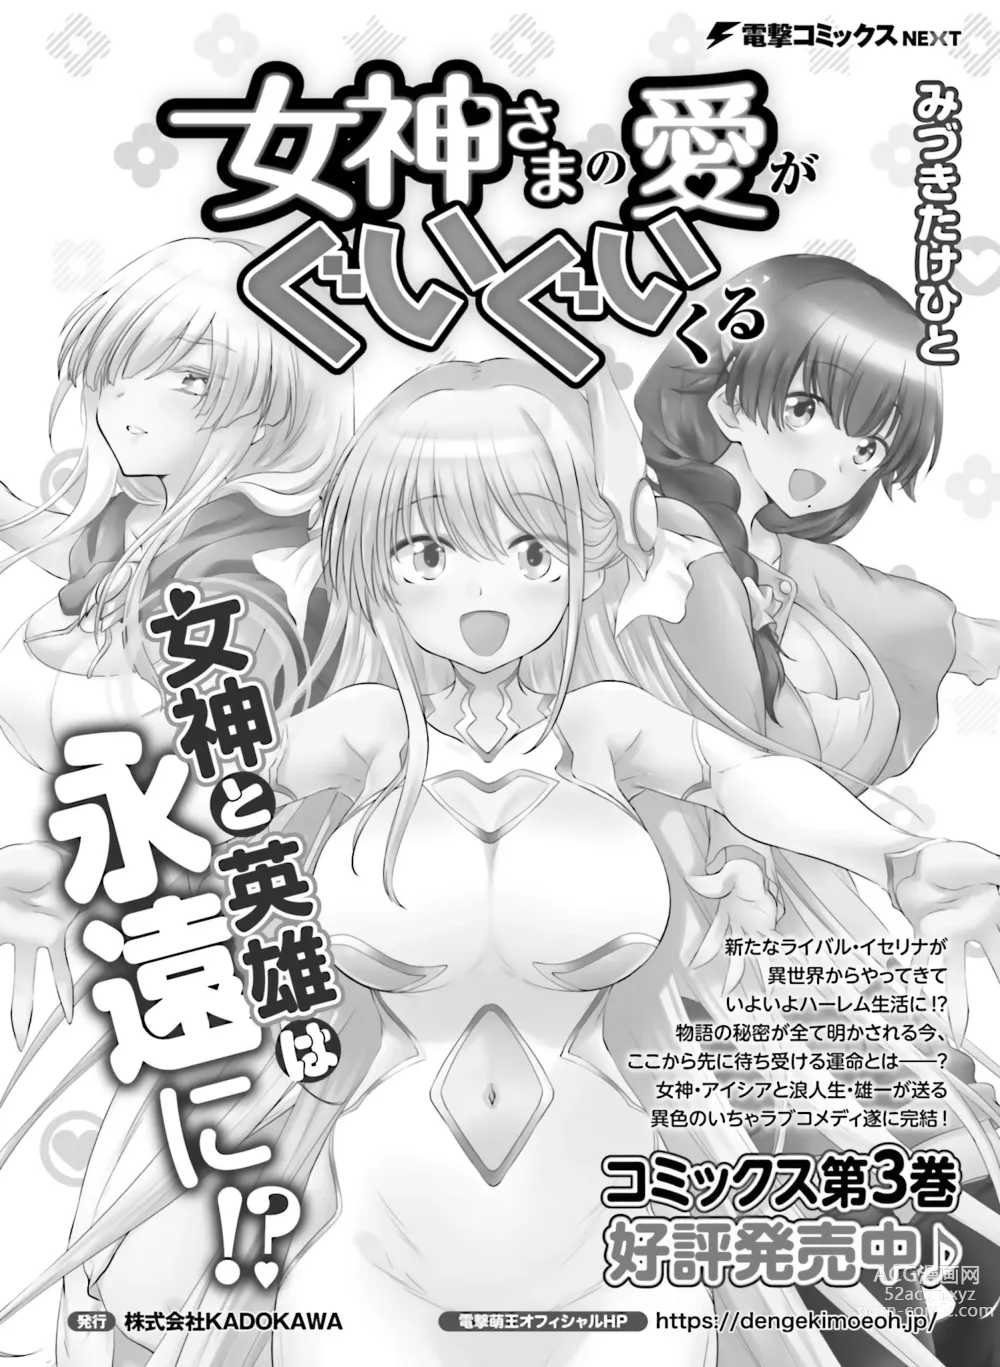 Page 120 of manga Dengeki Moeoh 2023-08